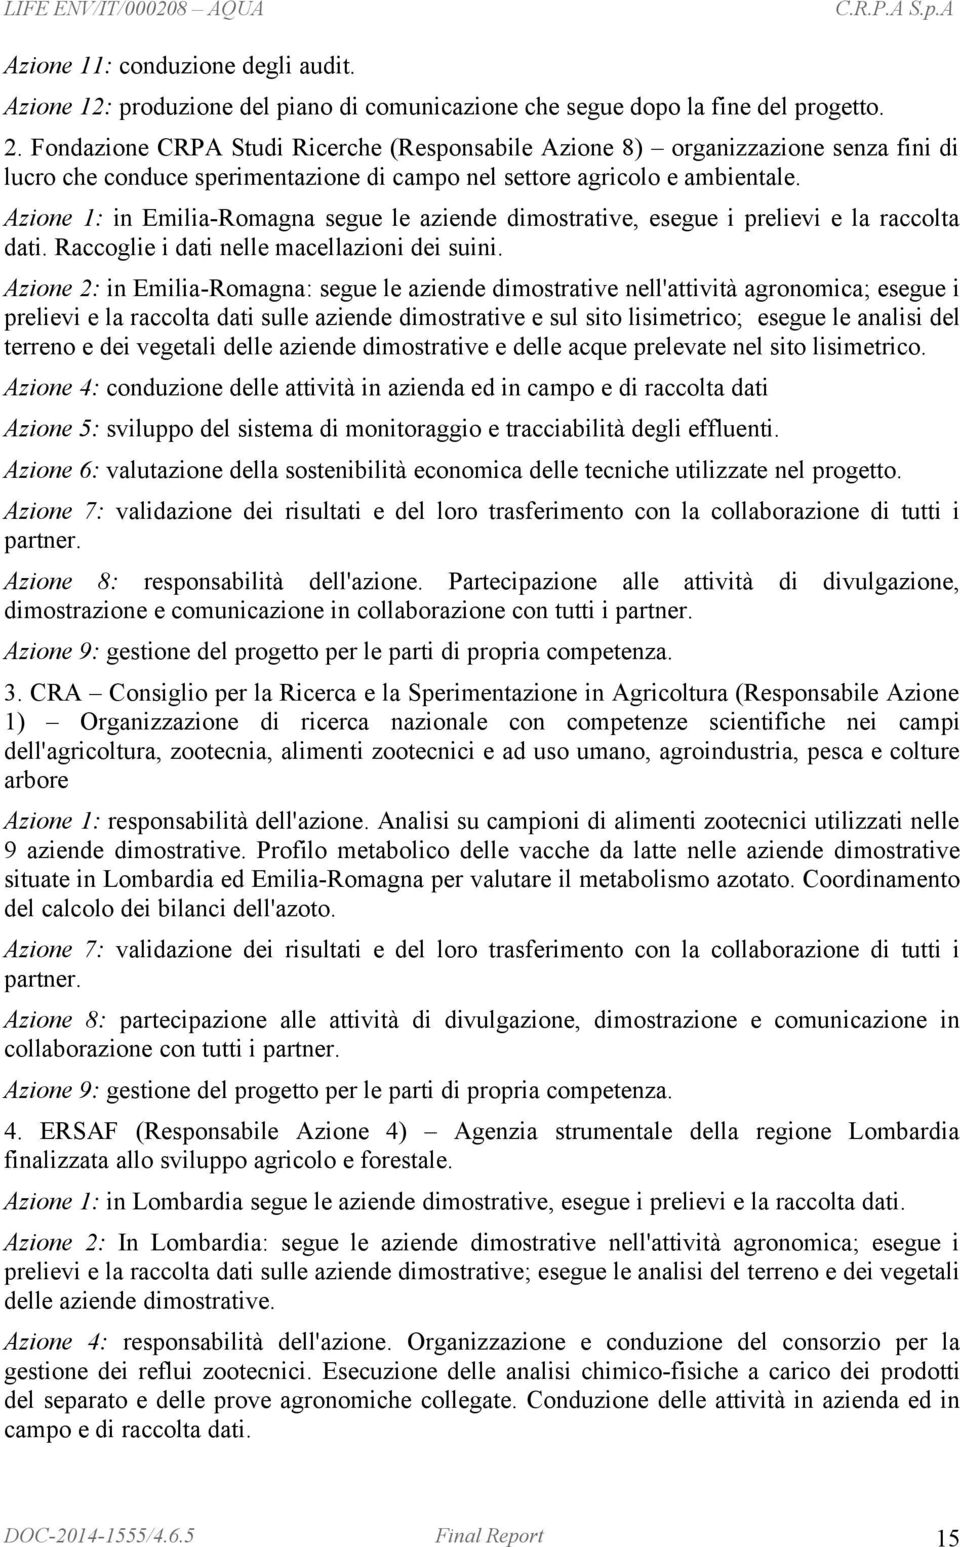 Azione 1: in Emilia-Romagna segue le aziende dimostrative, esegue i prelievi e la raccolta dati. Raccoglie i dati nelle macellazioni dei suini.